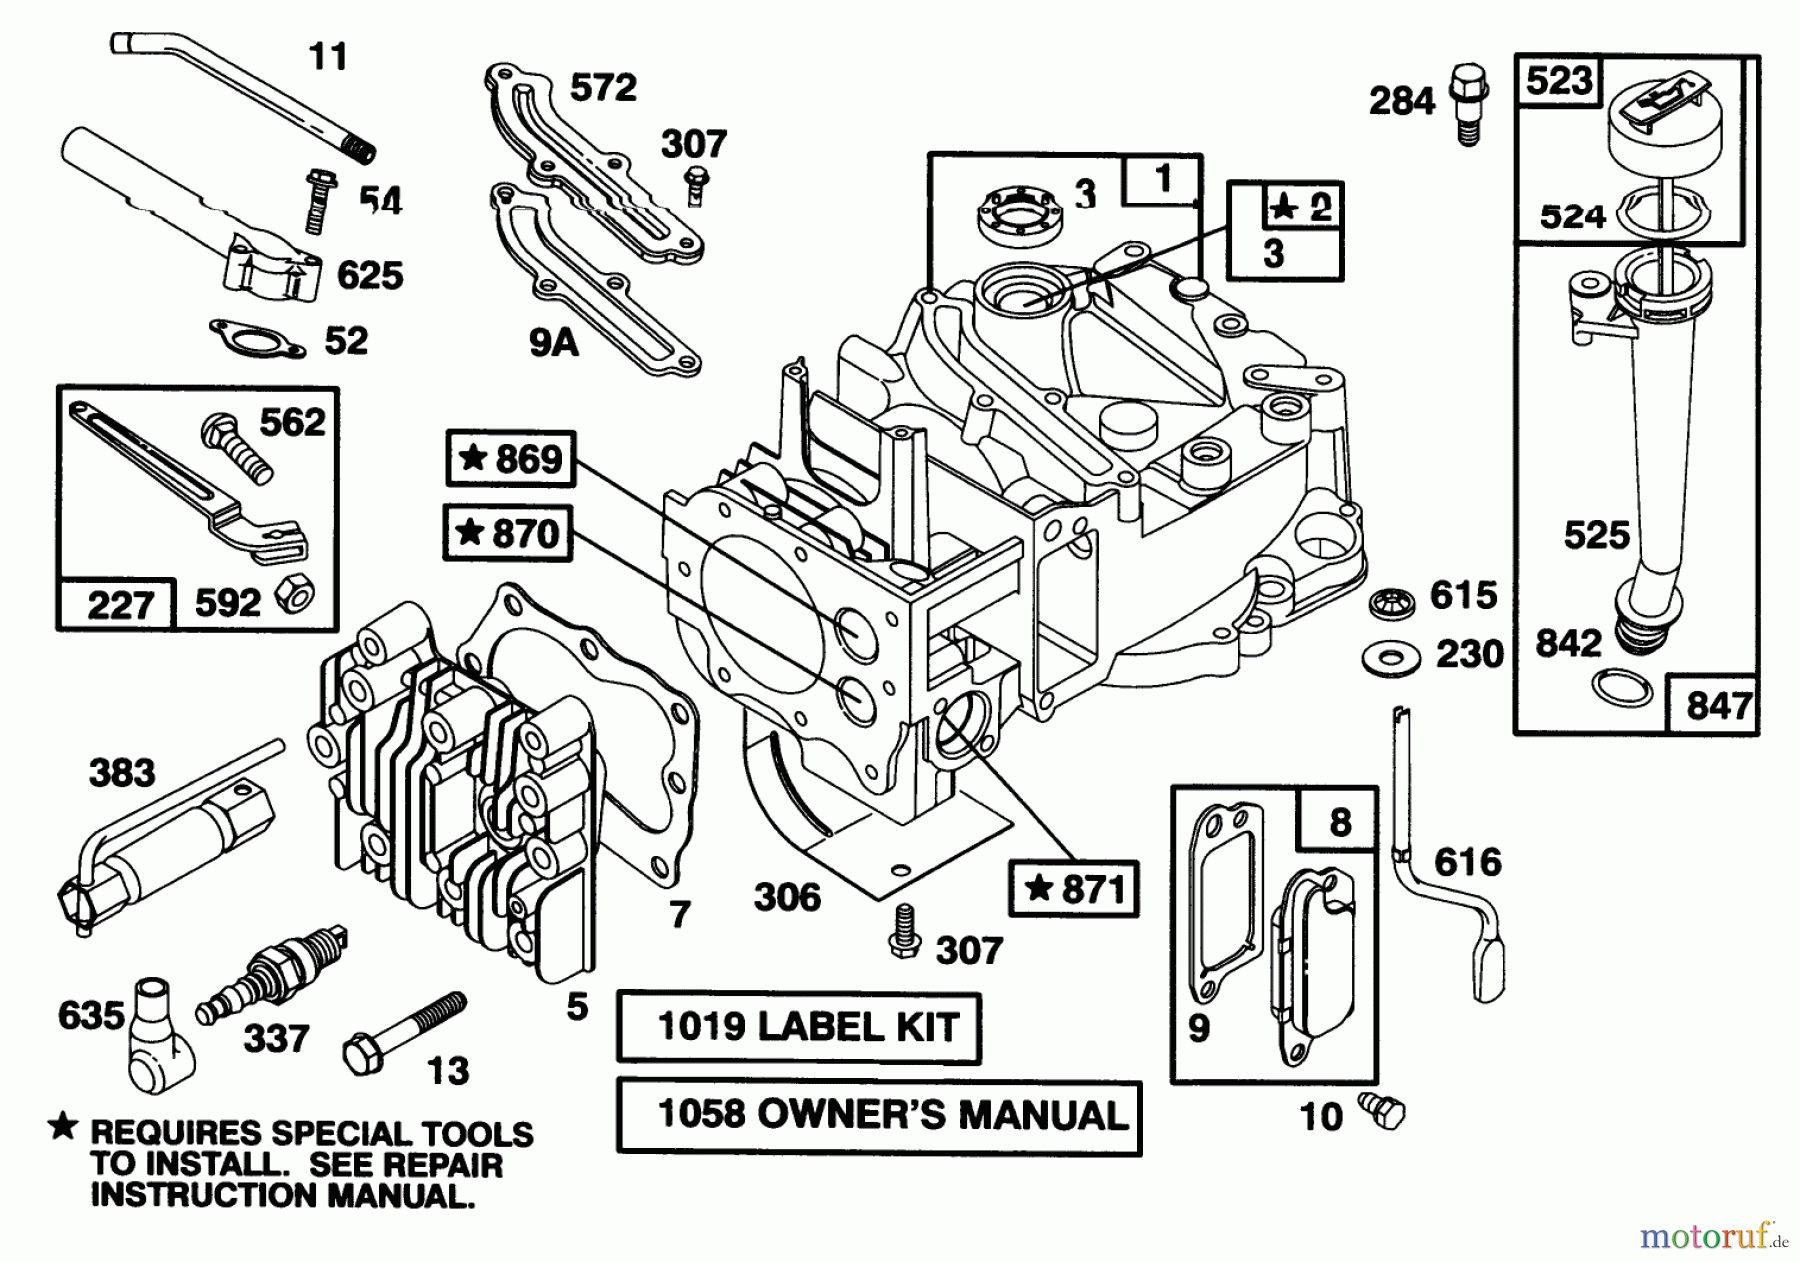  Toro Neu Mowers, Walk-Behind Seite 1 16400 - Toro Lawnmower, 1996 (6900001-6999999) ENGINE BRIGGS & STRATTON MODEL 127702-0645-01 #1